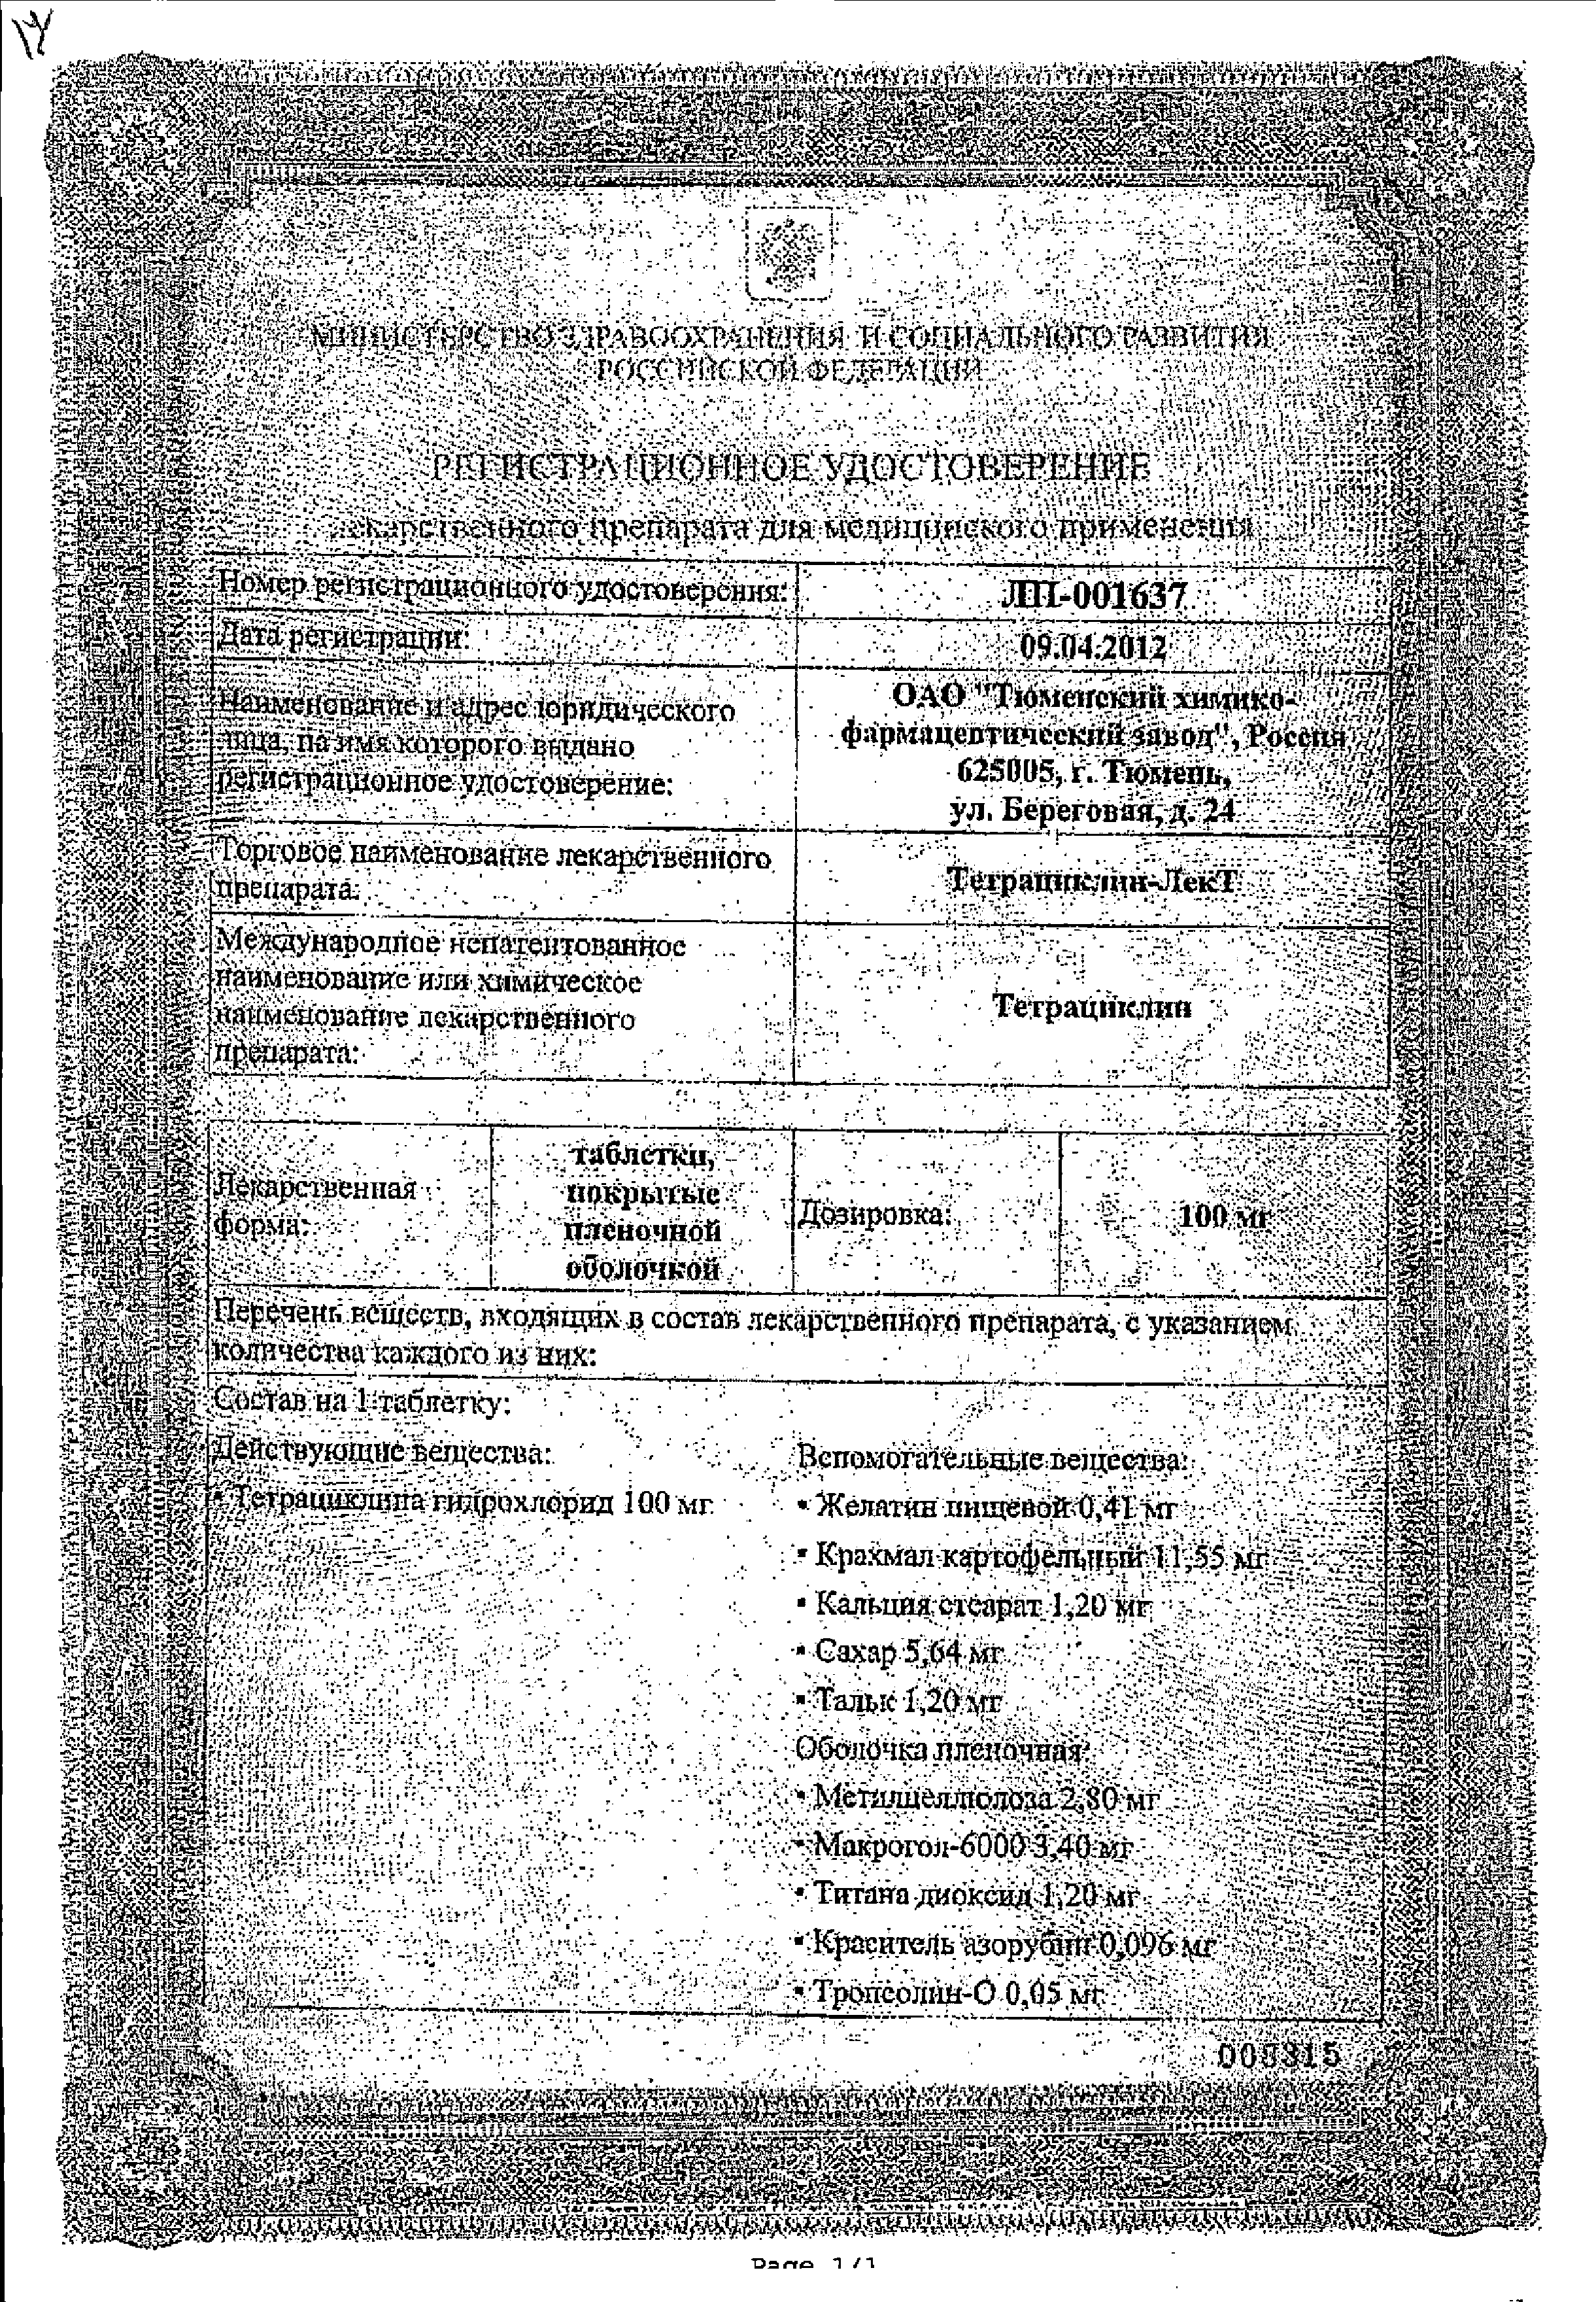 Тетрациклин-ЛекТ сертификат